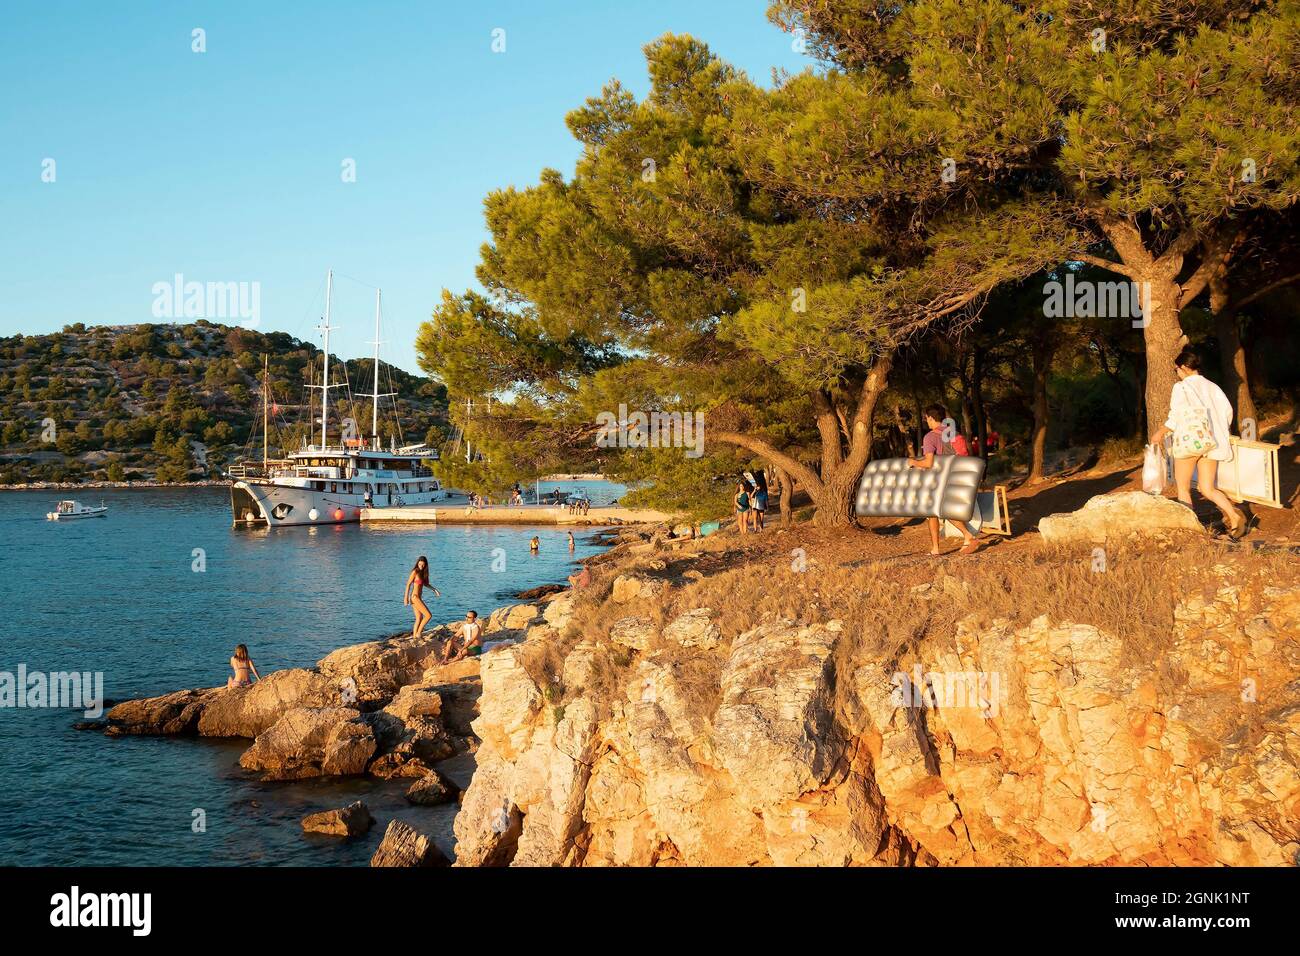 Podvrske, Murter, Croacia - 26 de agosto de 2021: Pinos junto a la playa rocosa, personas que llevan accesorios de playa y barcos amarrados en verano puesta de sol Foto de stock